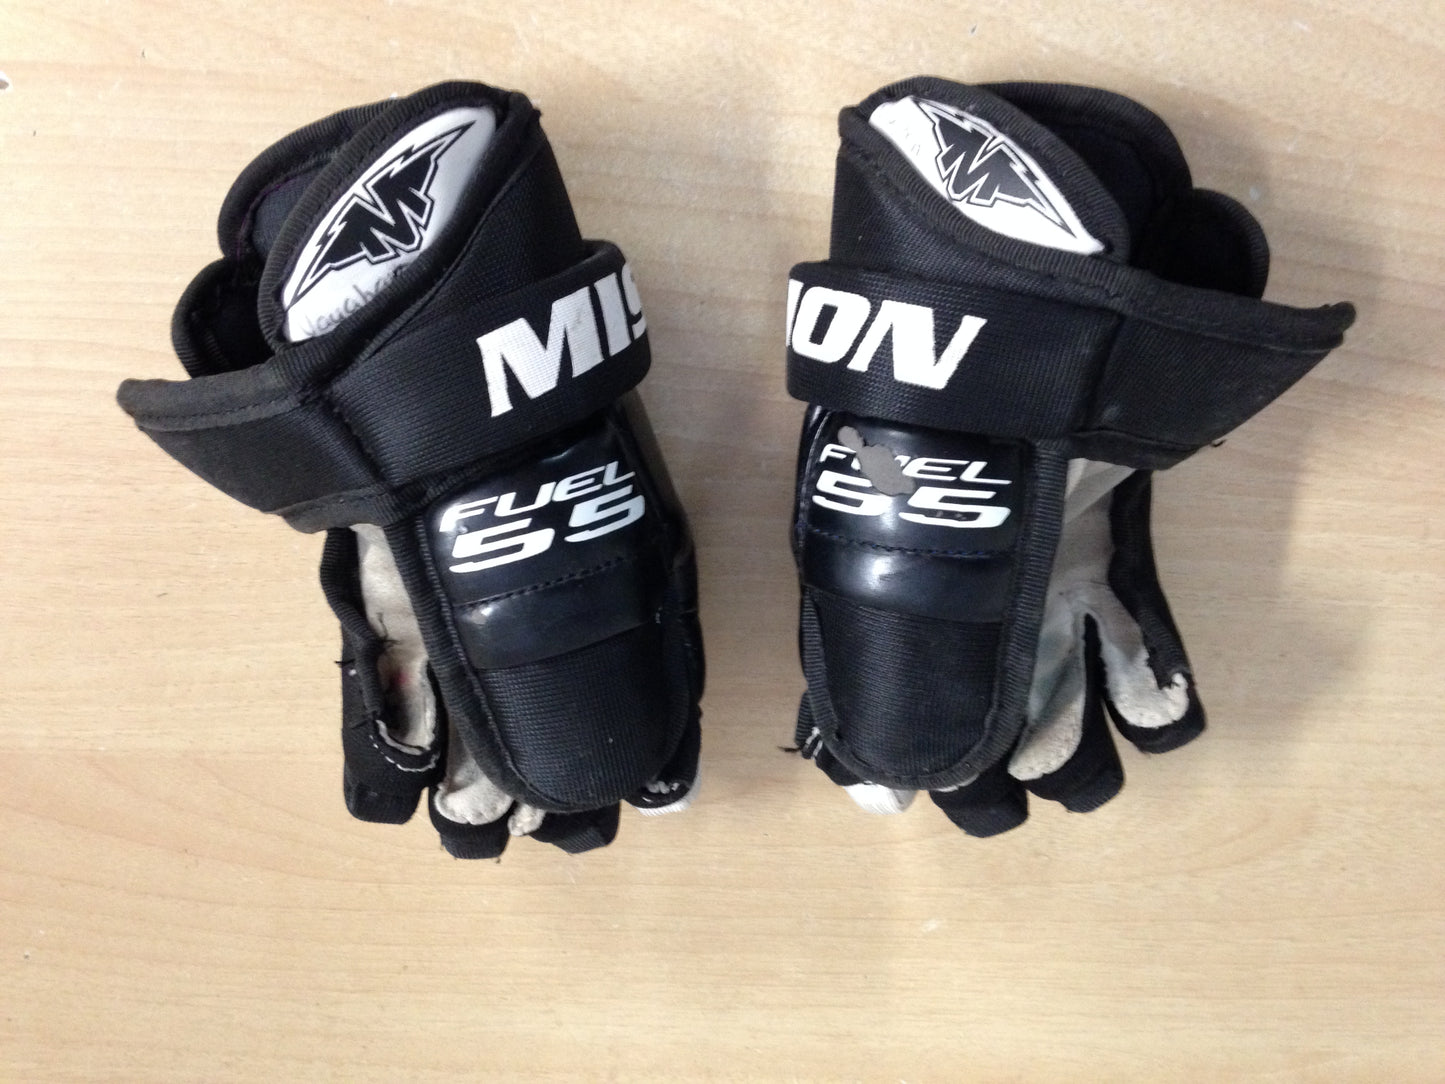 Hockey Gloves Child Size 8 inch Mission Black White